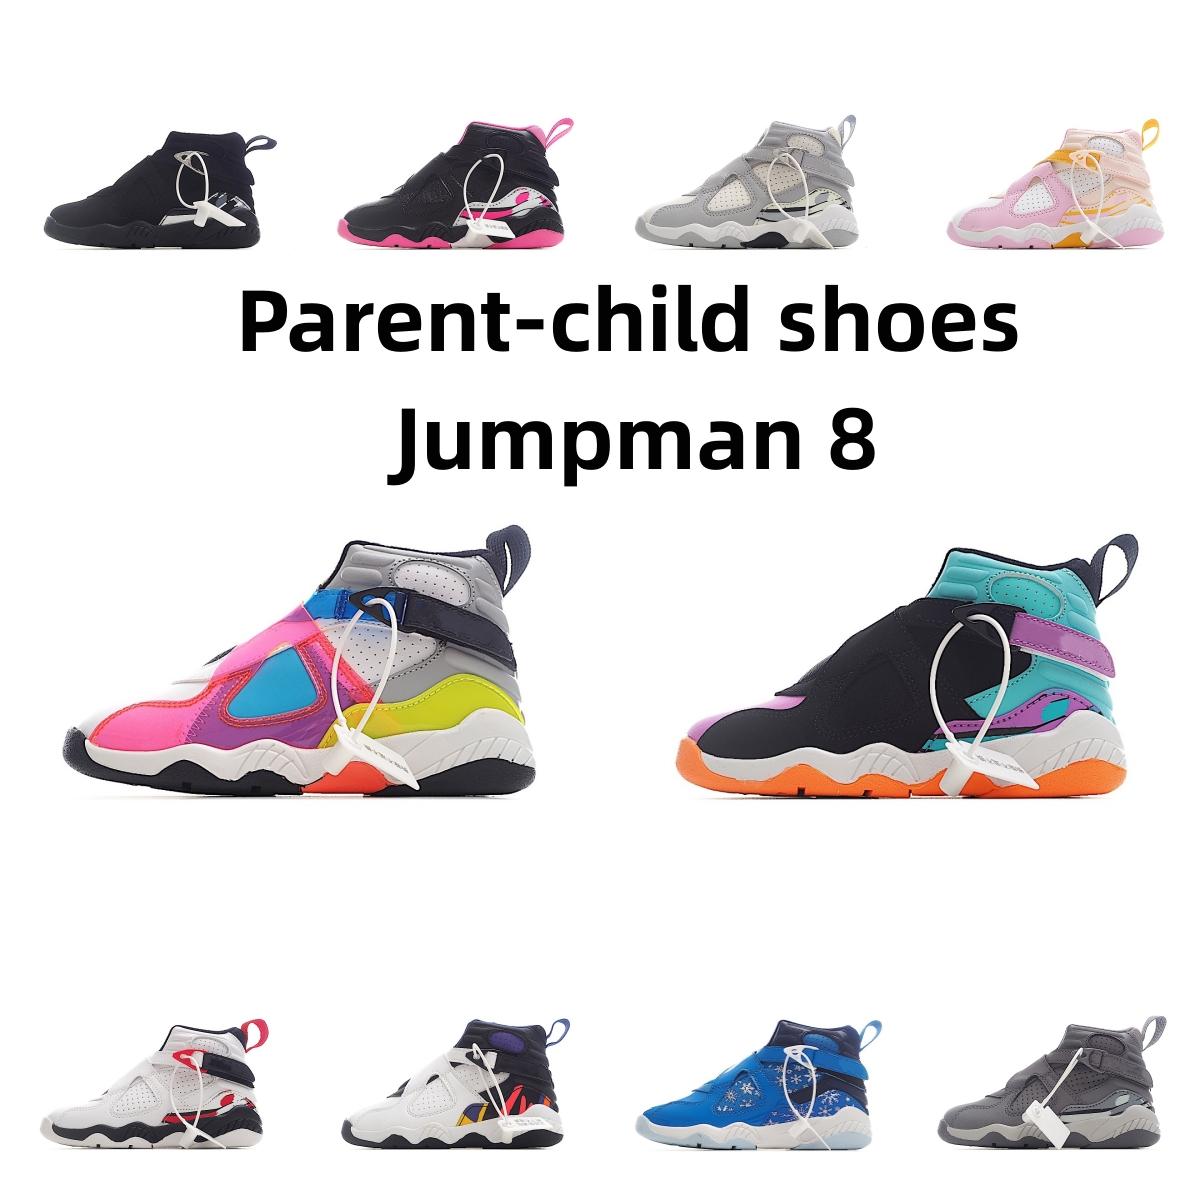 Jumpman 8 kid Scarpe da basket Grape 8s per ragazzi e ragazze Sneakers da ginnastica genitore-figlio